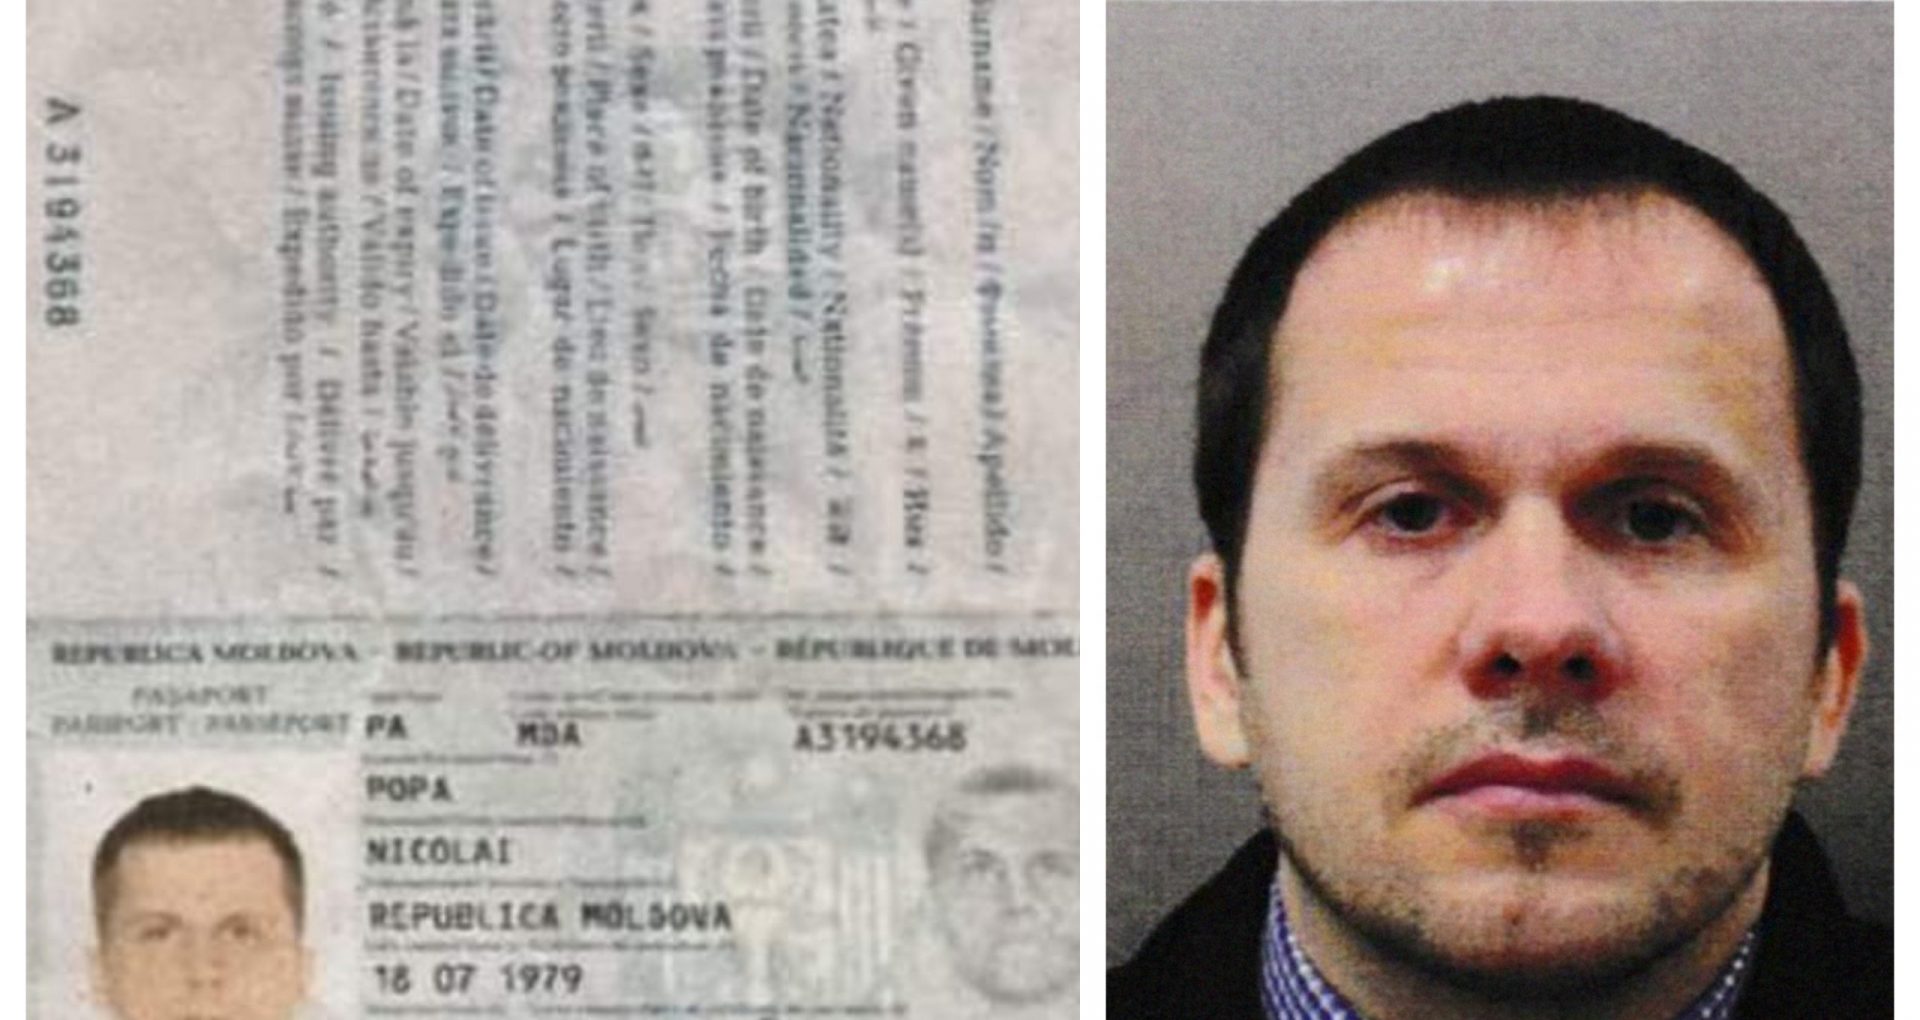 Pașaportul moldovenesc folosit de agentul rus Alexandr Petrov, emis în Chișinău pe numele unei alte persoane